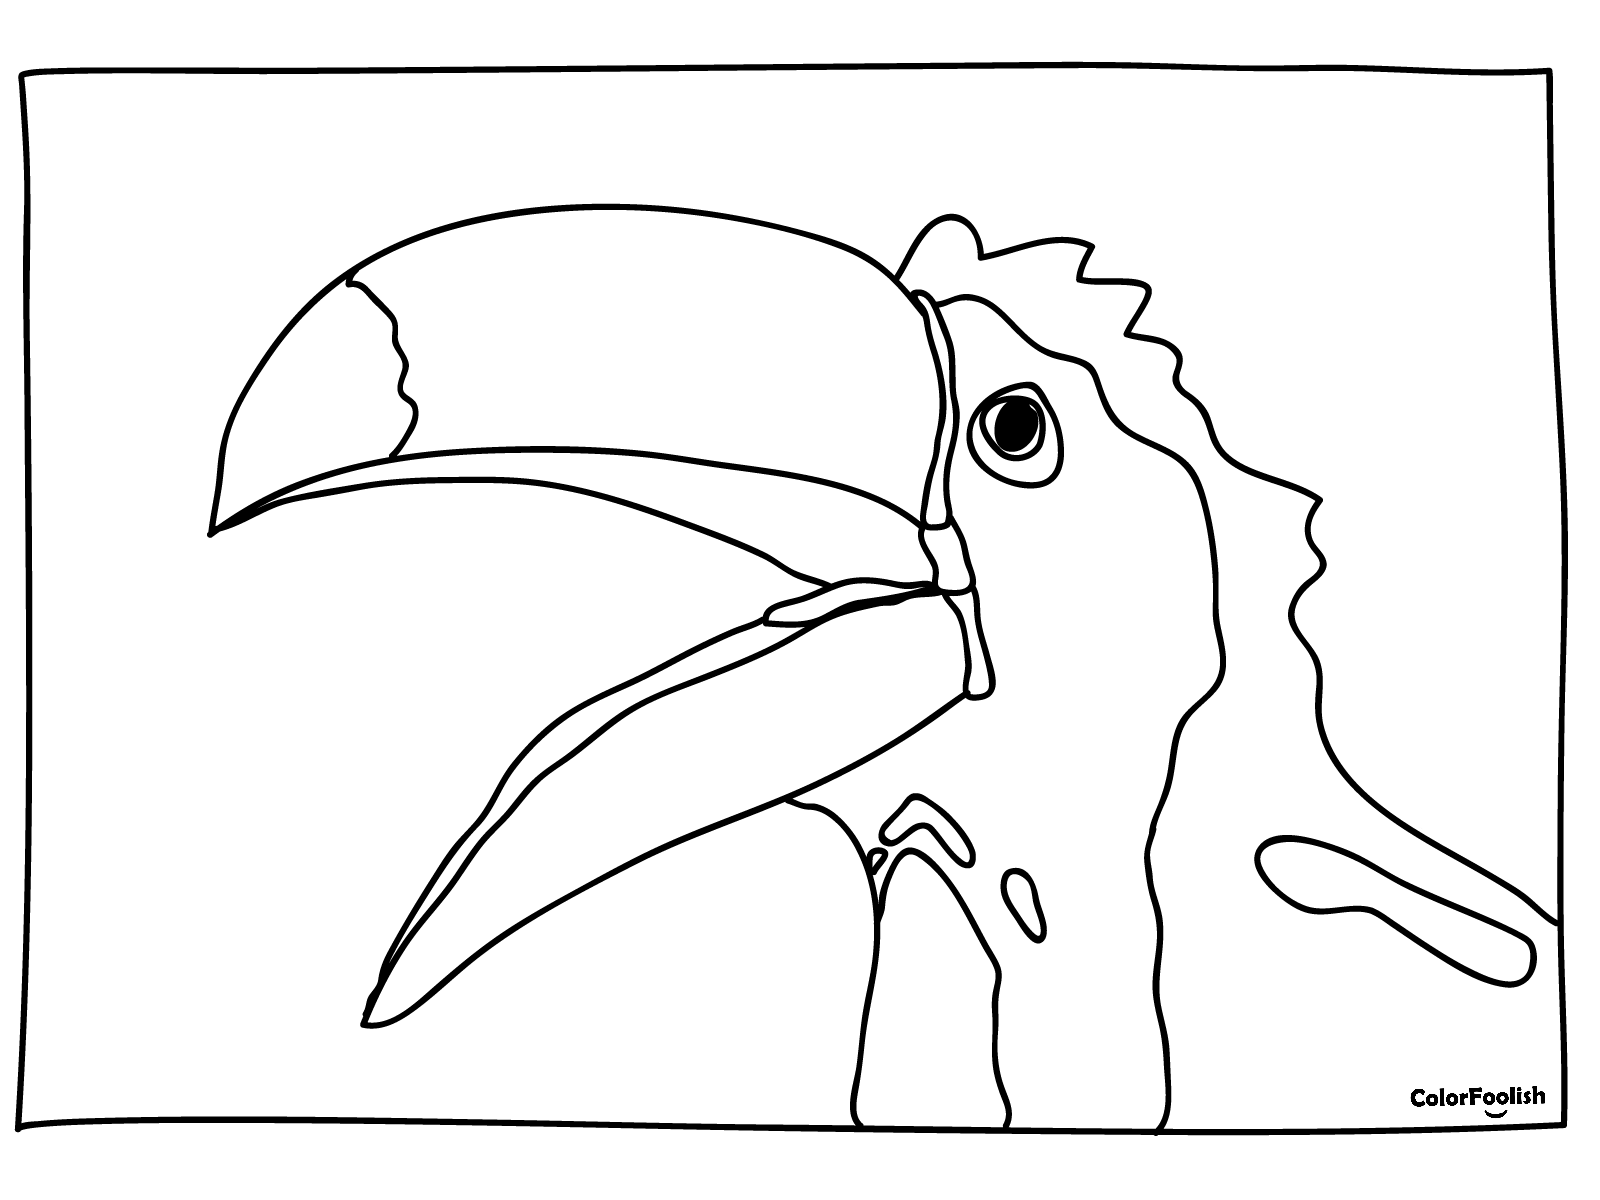 Stranica za bojanje ptice Toucan